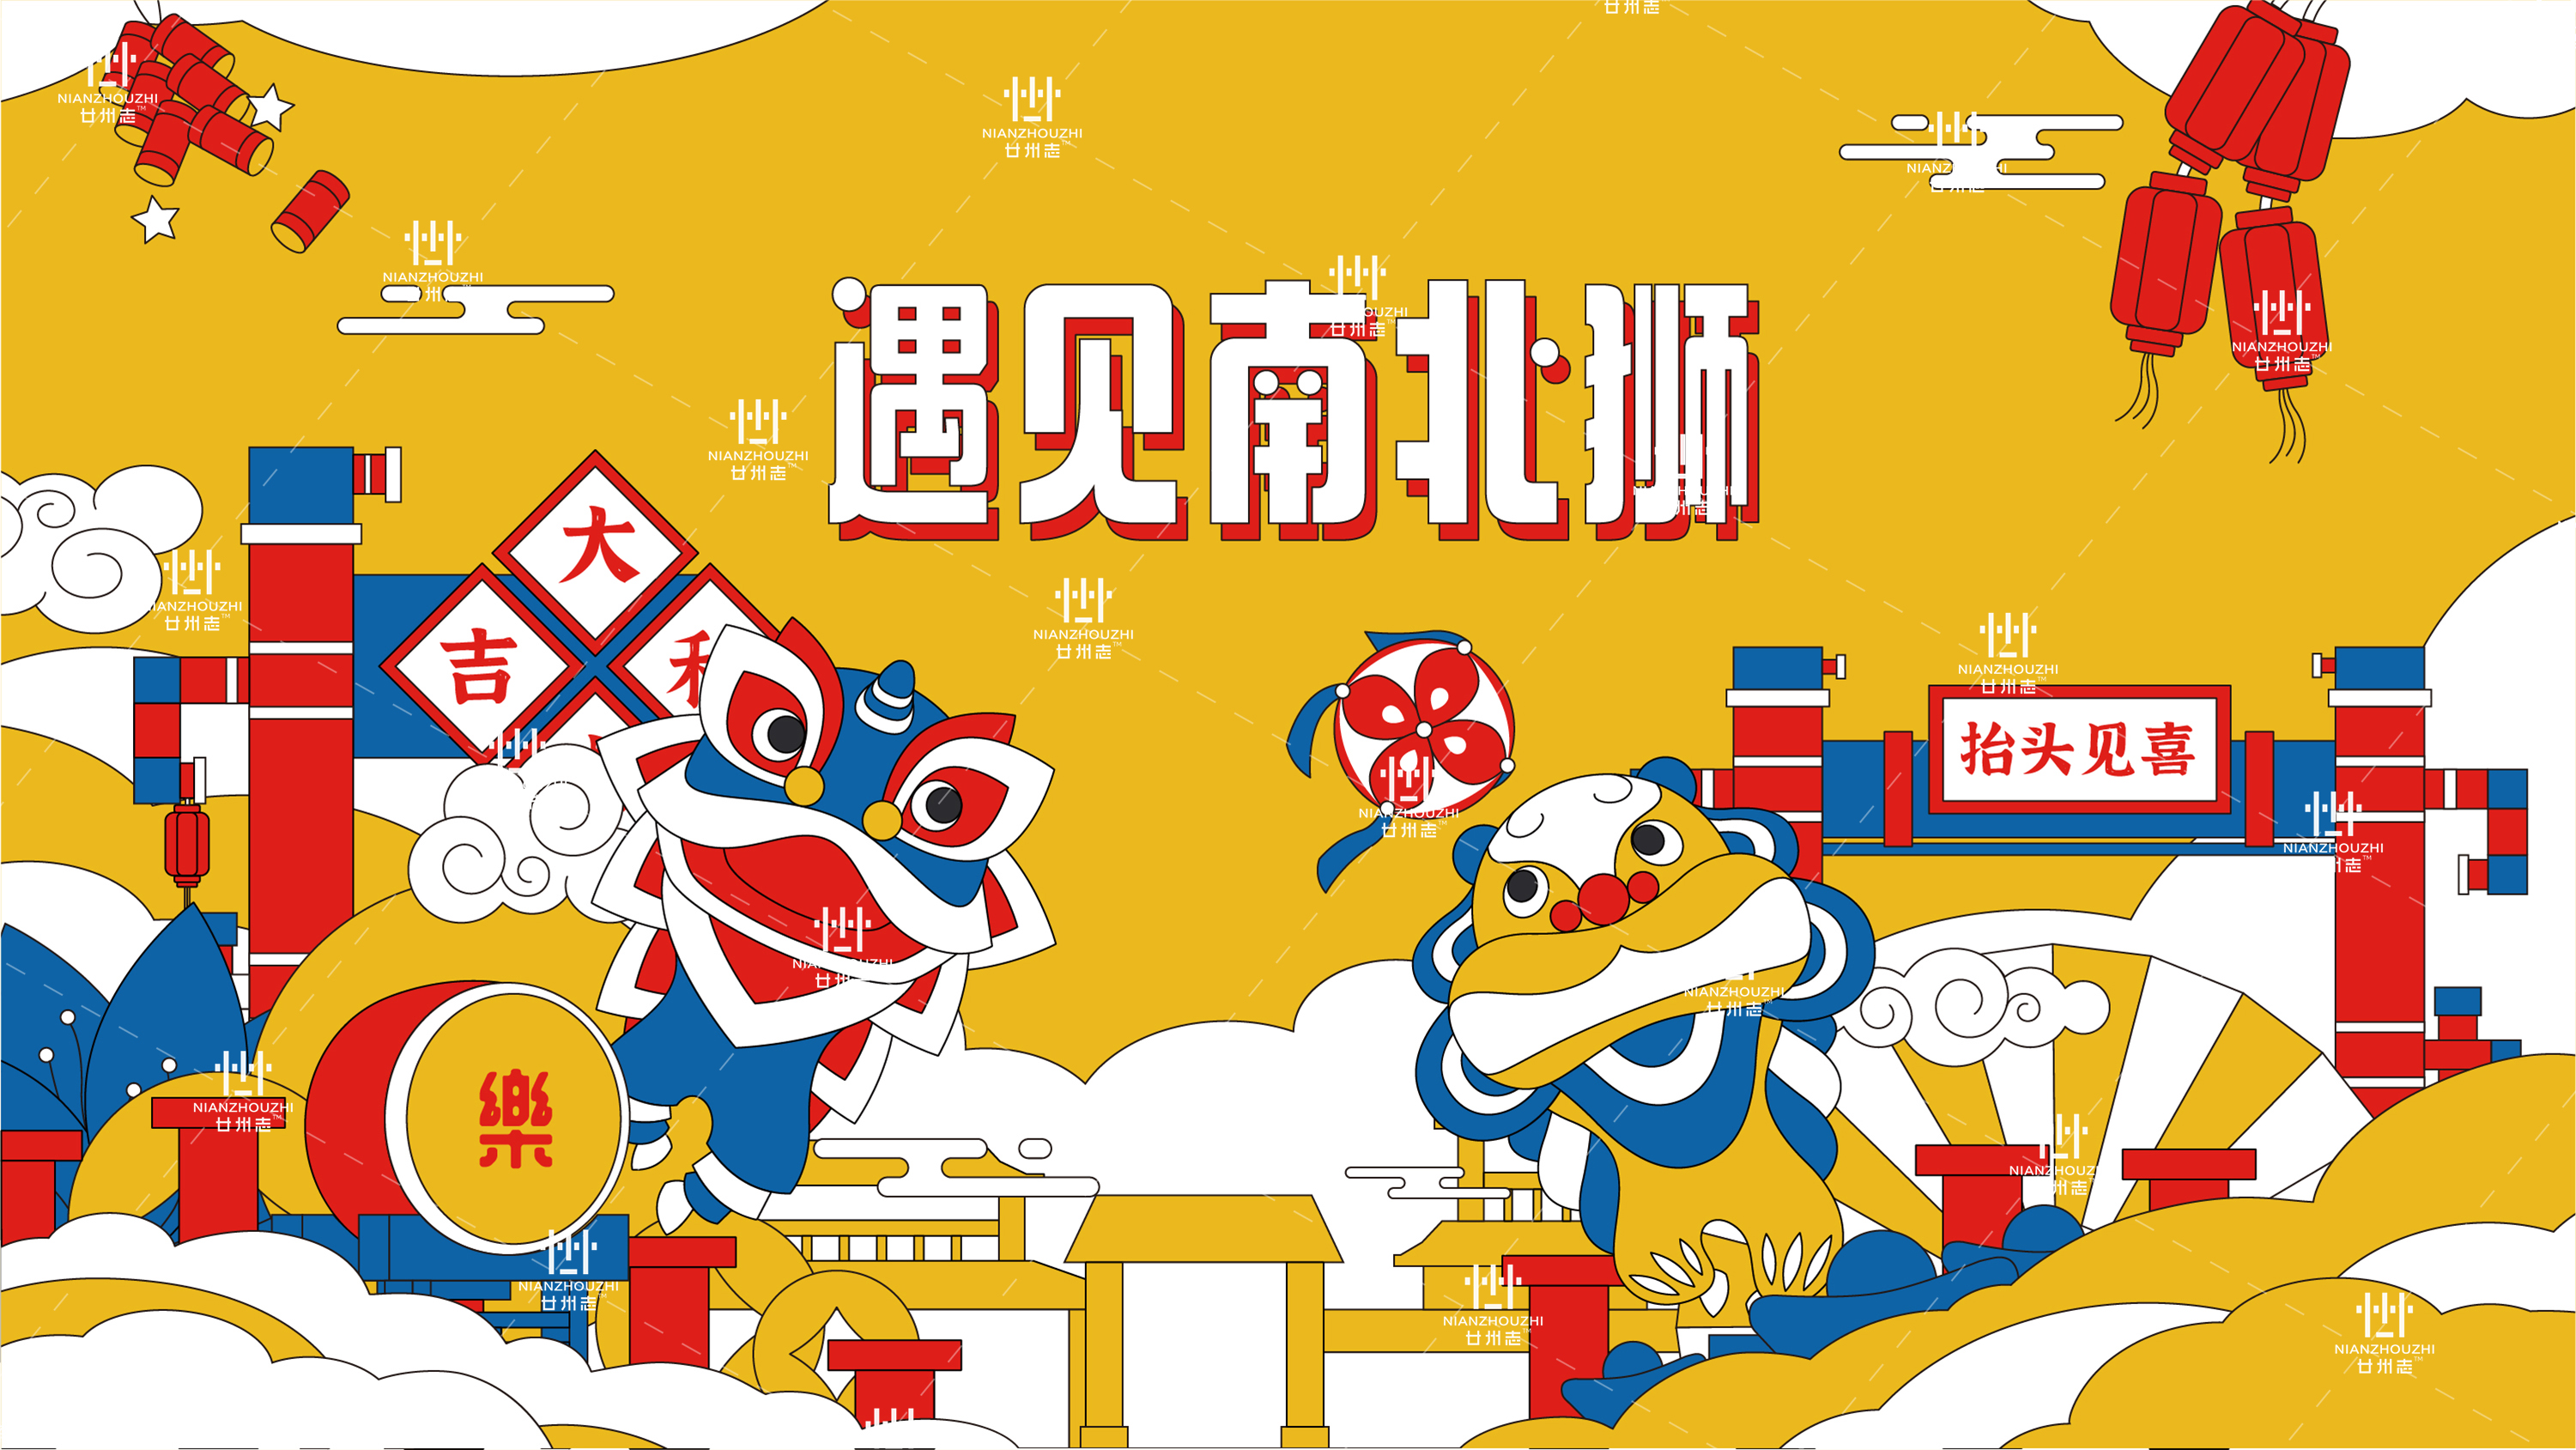 【国潮主题美陈】中国建党100周年--南北狮国潮美陈展